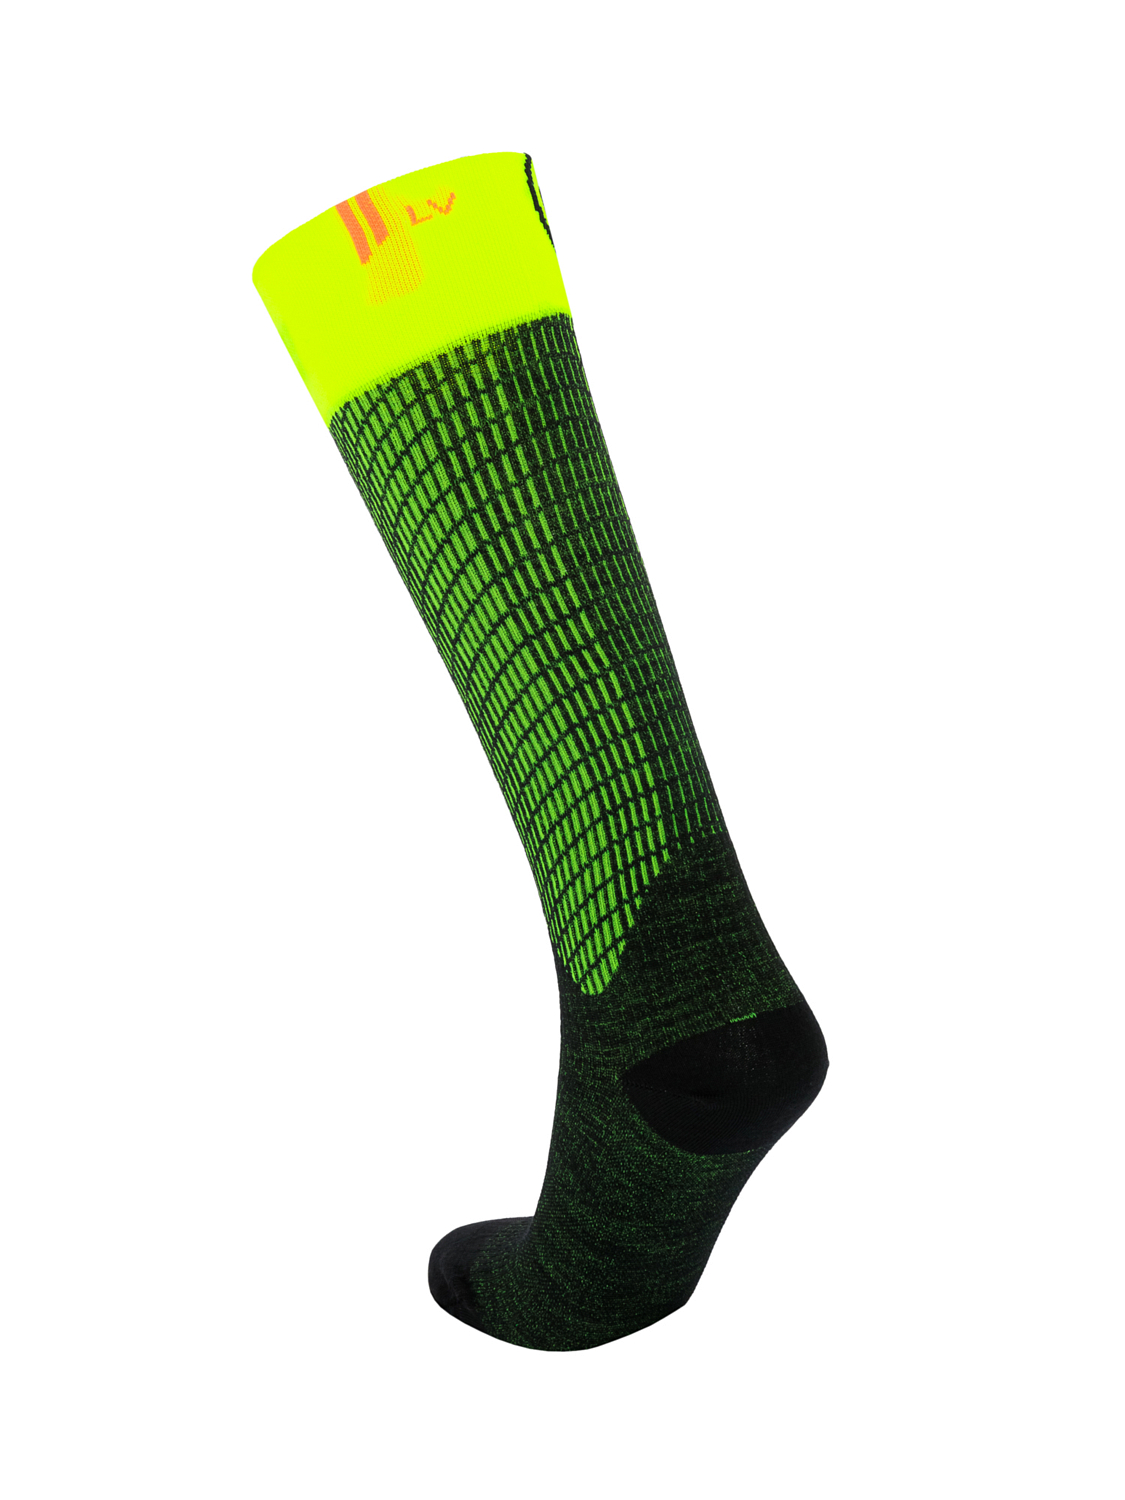 Носки SIDAS Ski UltraFit LV Socks Low Volume